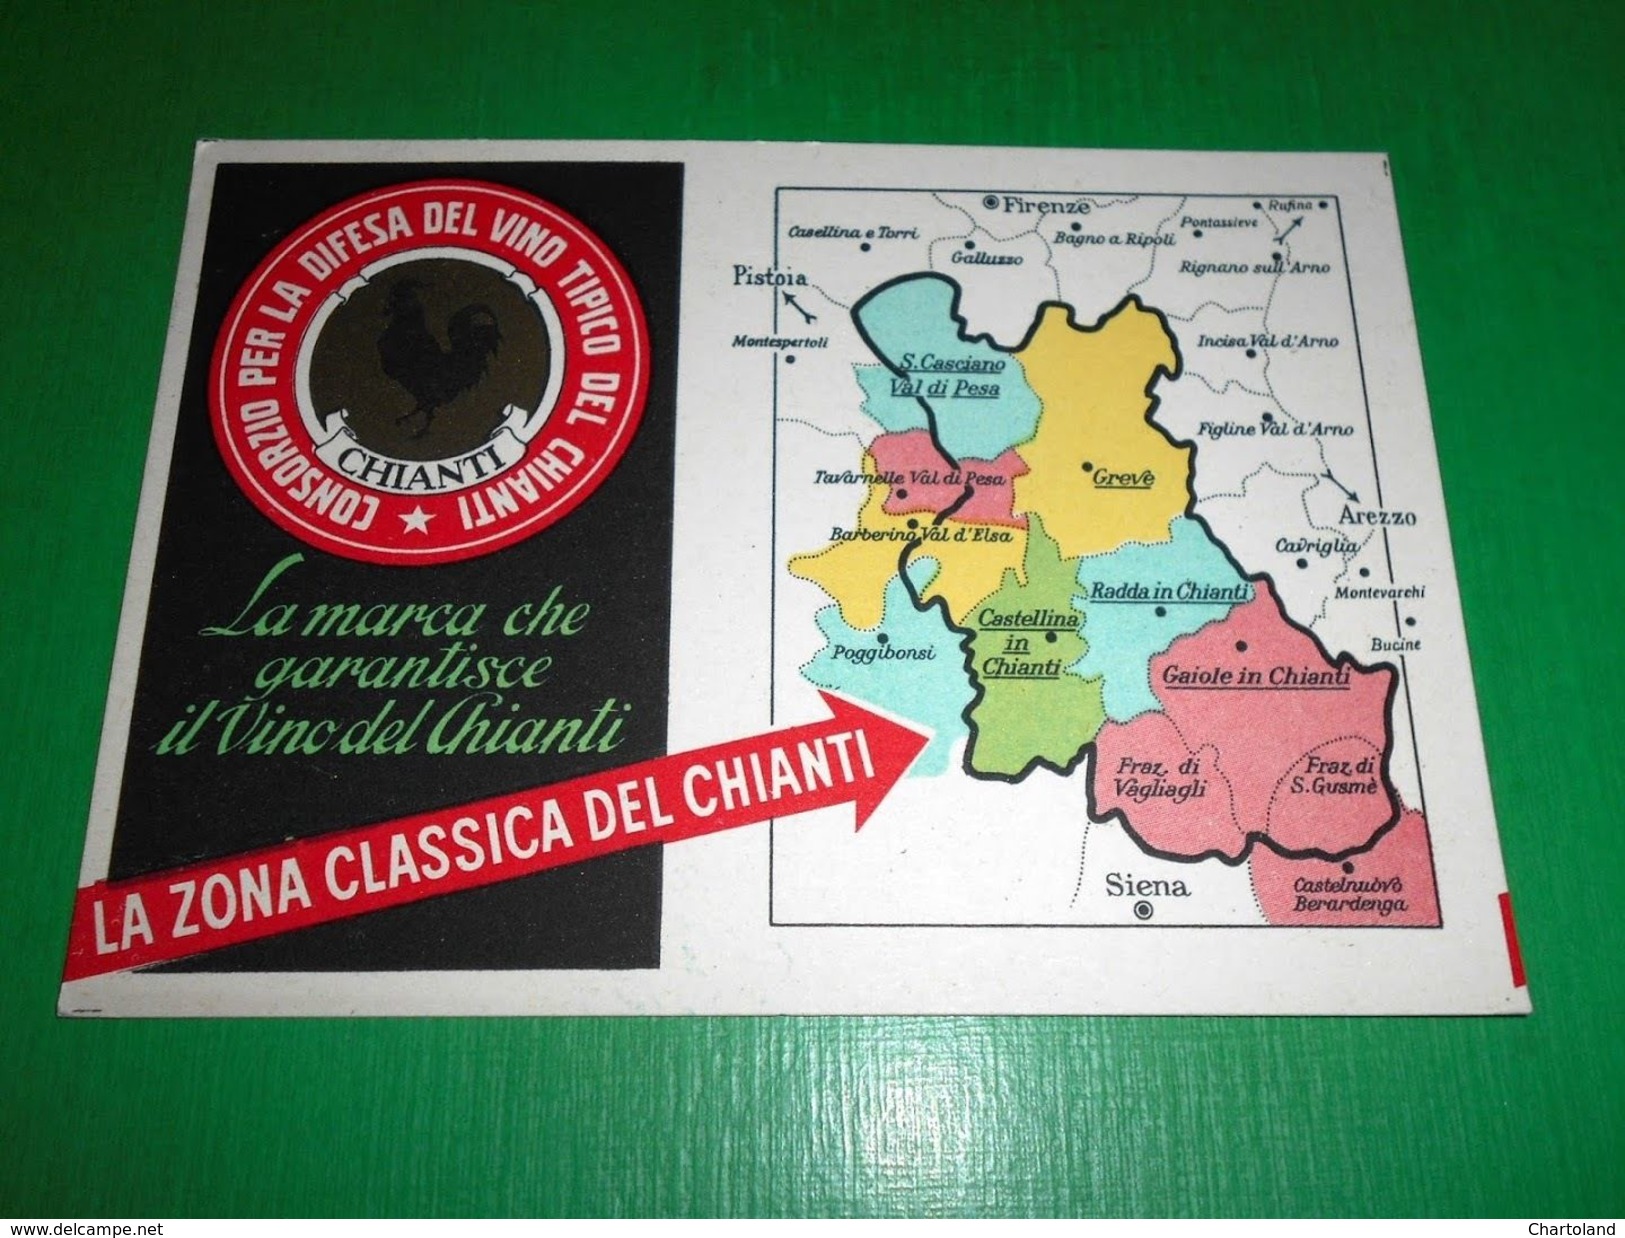 Cartolina Enologia Vino Chianti - Cartina Della Zona Del Chianti 1960 Ca - Advertising